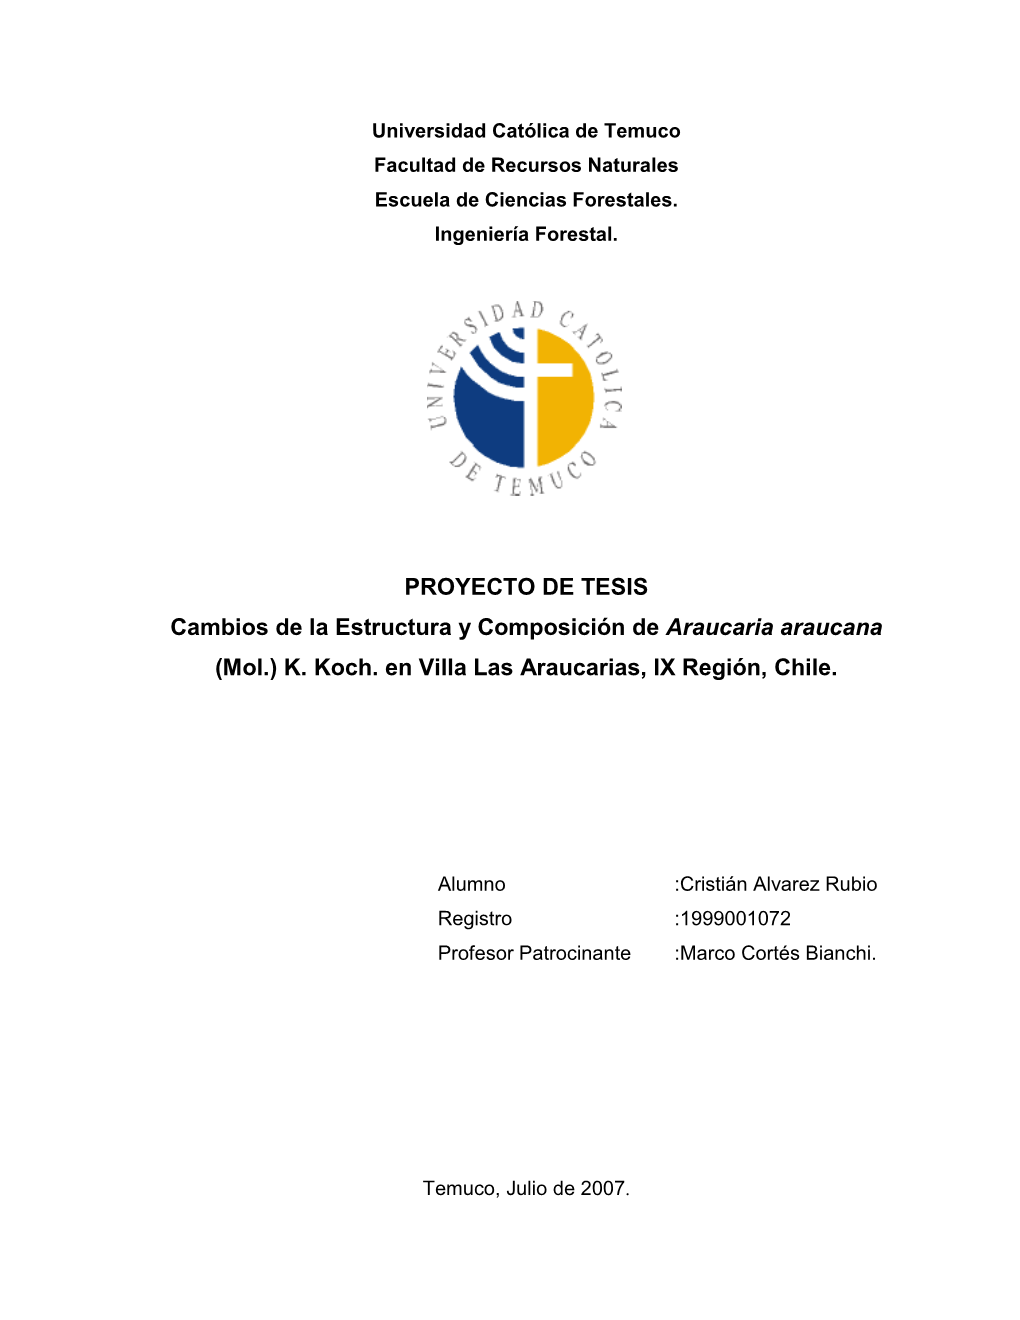 Cambios De La Estructura Y Composición De Araucaria Araucana (Mol.) K